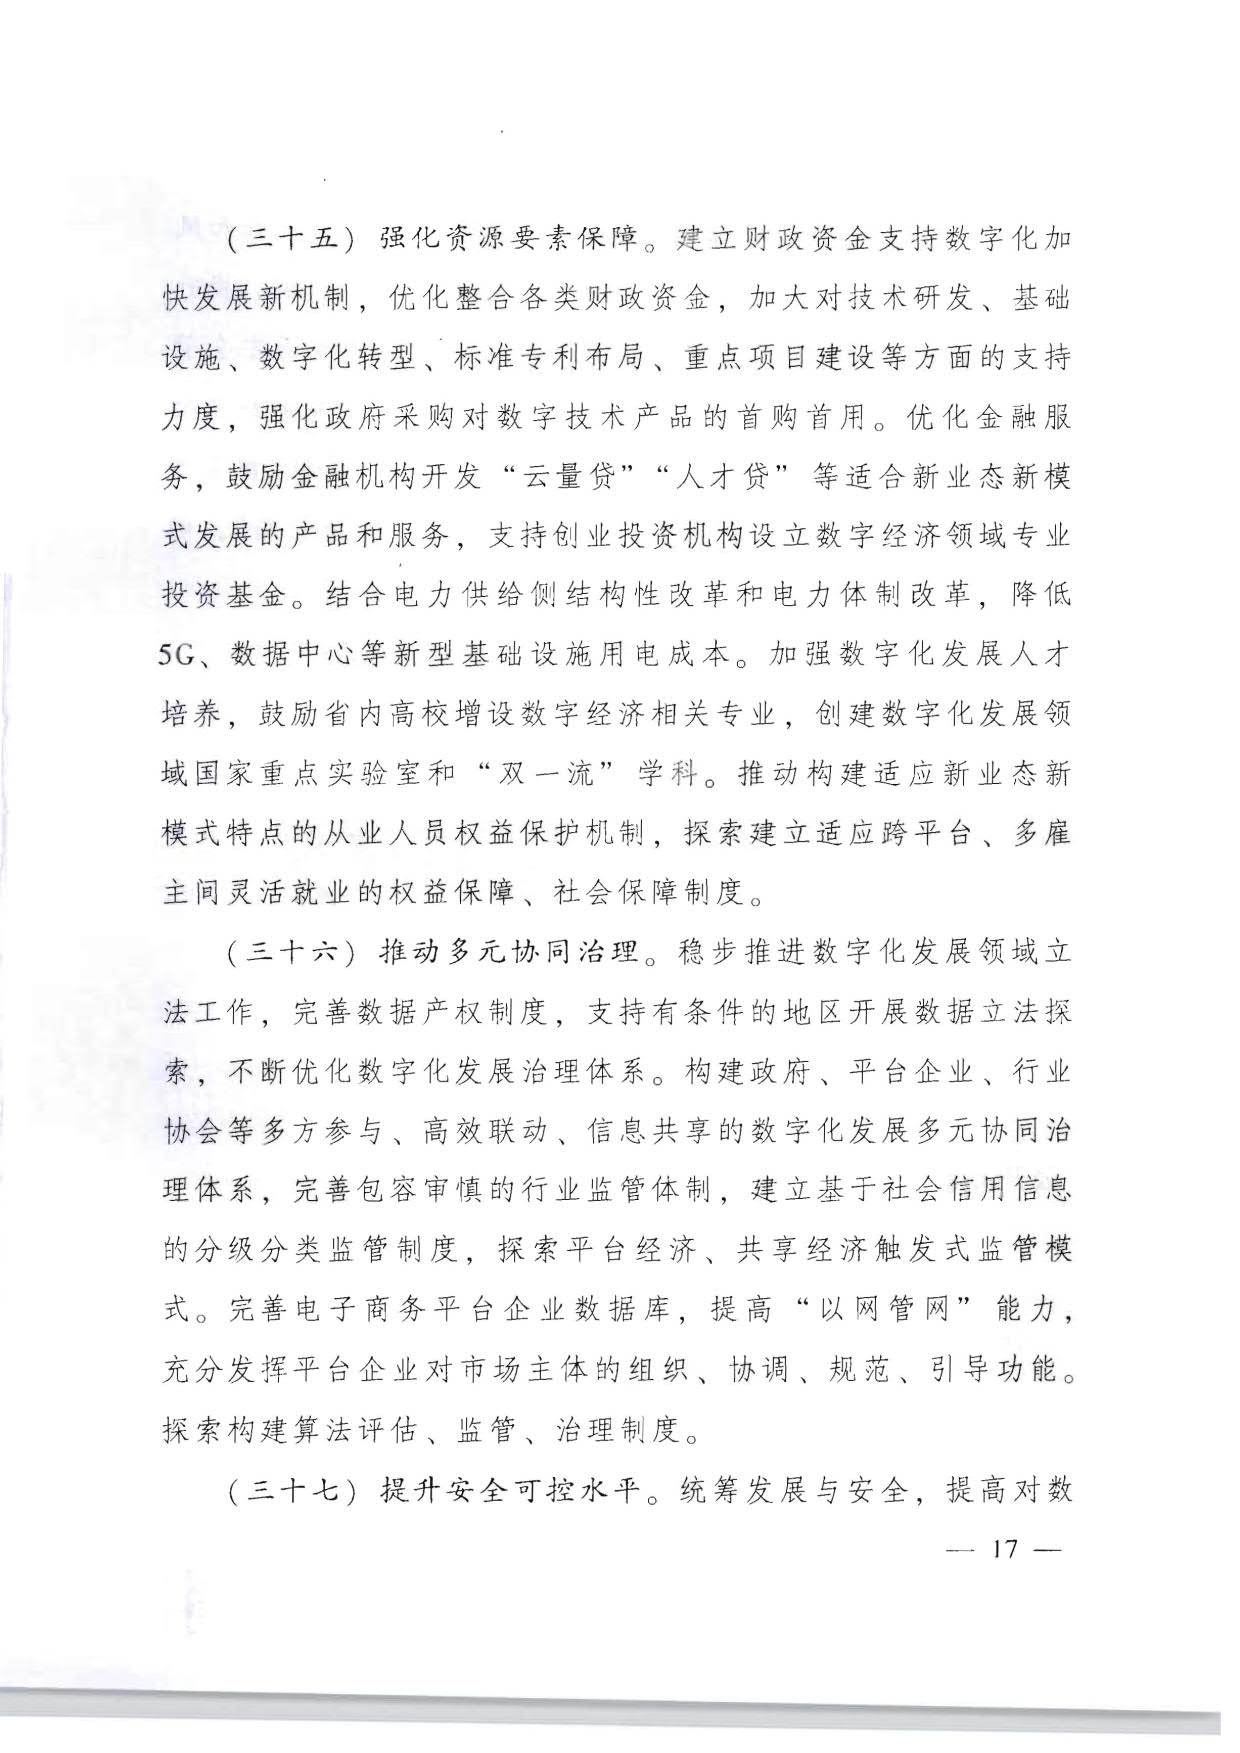 广东省人民政府关于加快数字化发展的意见_17.jpg